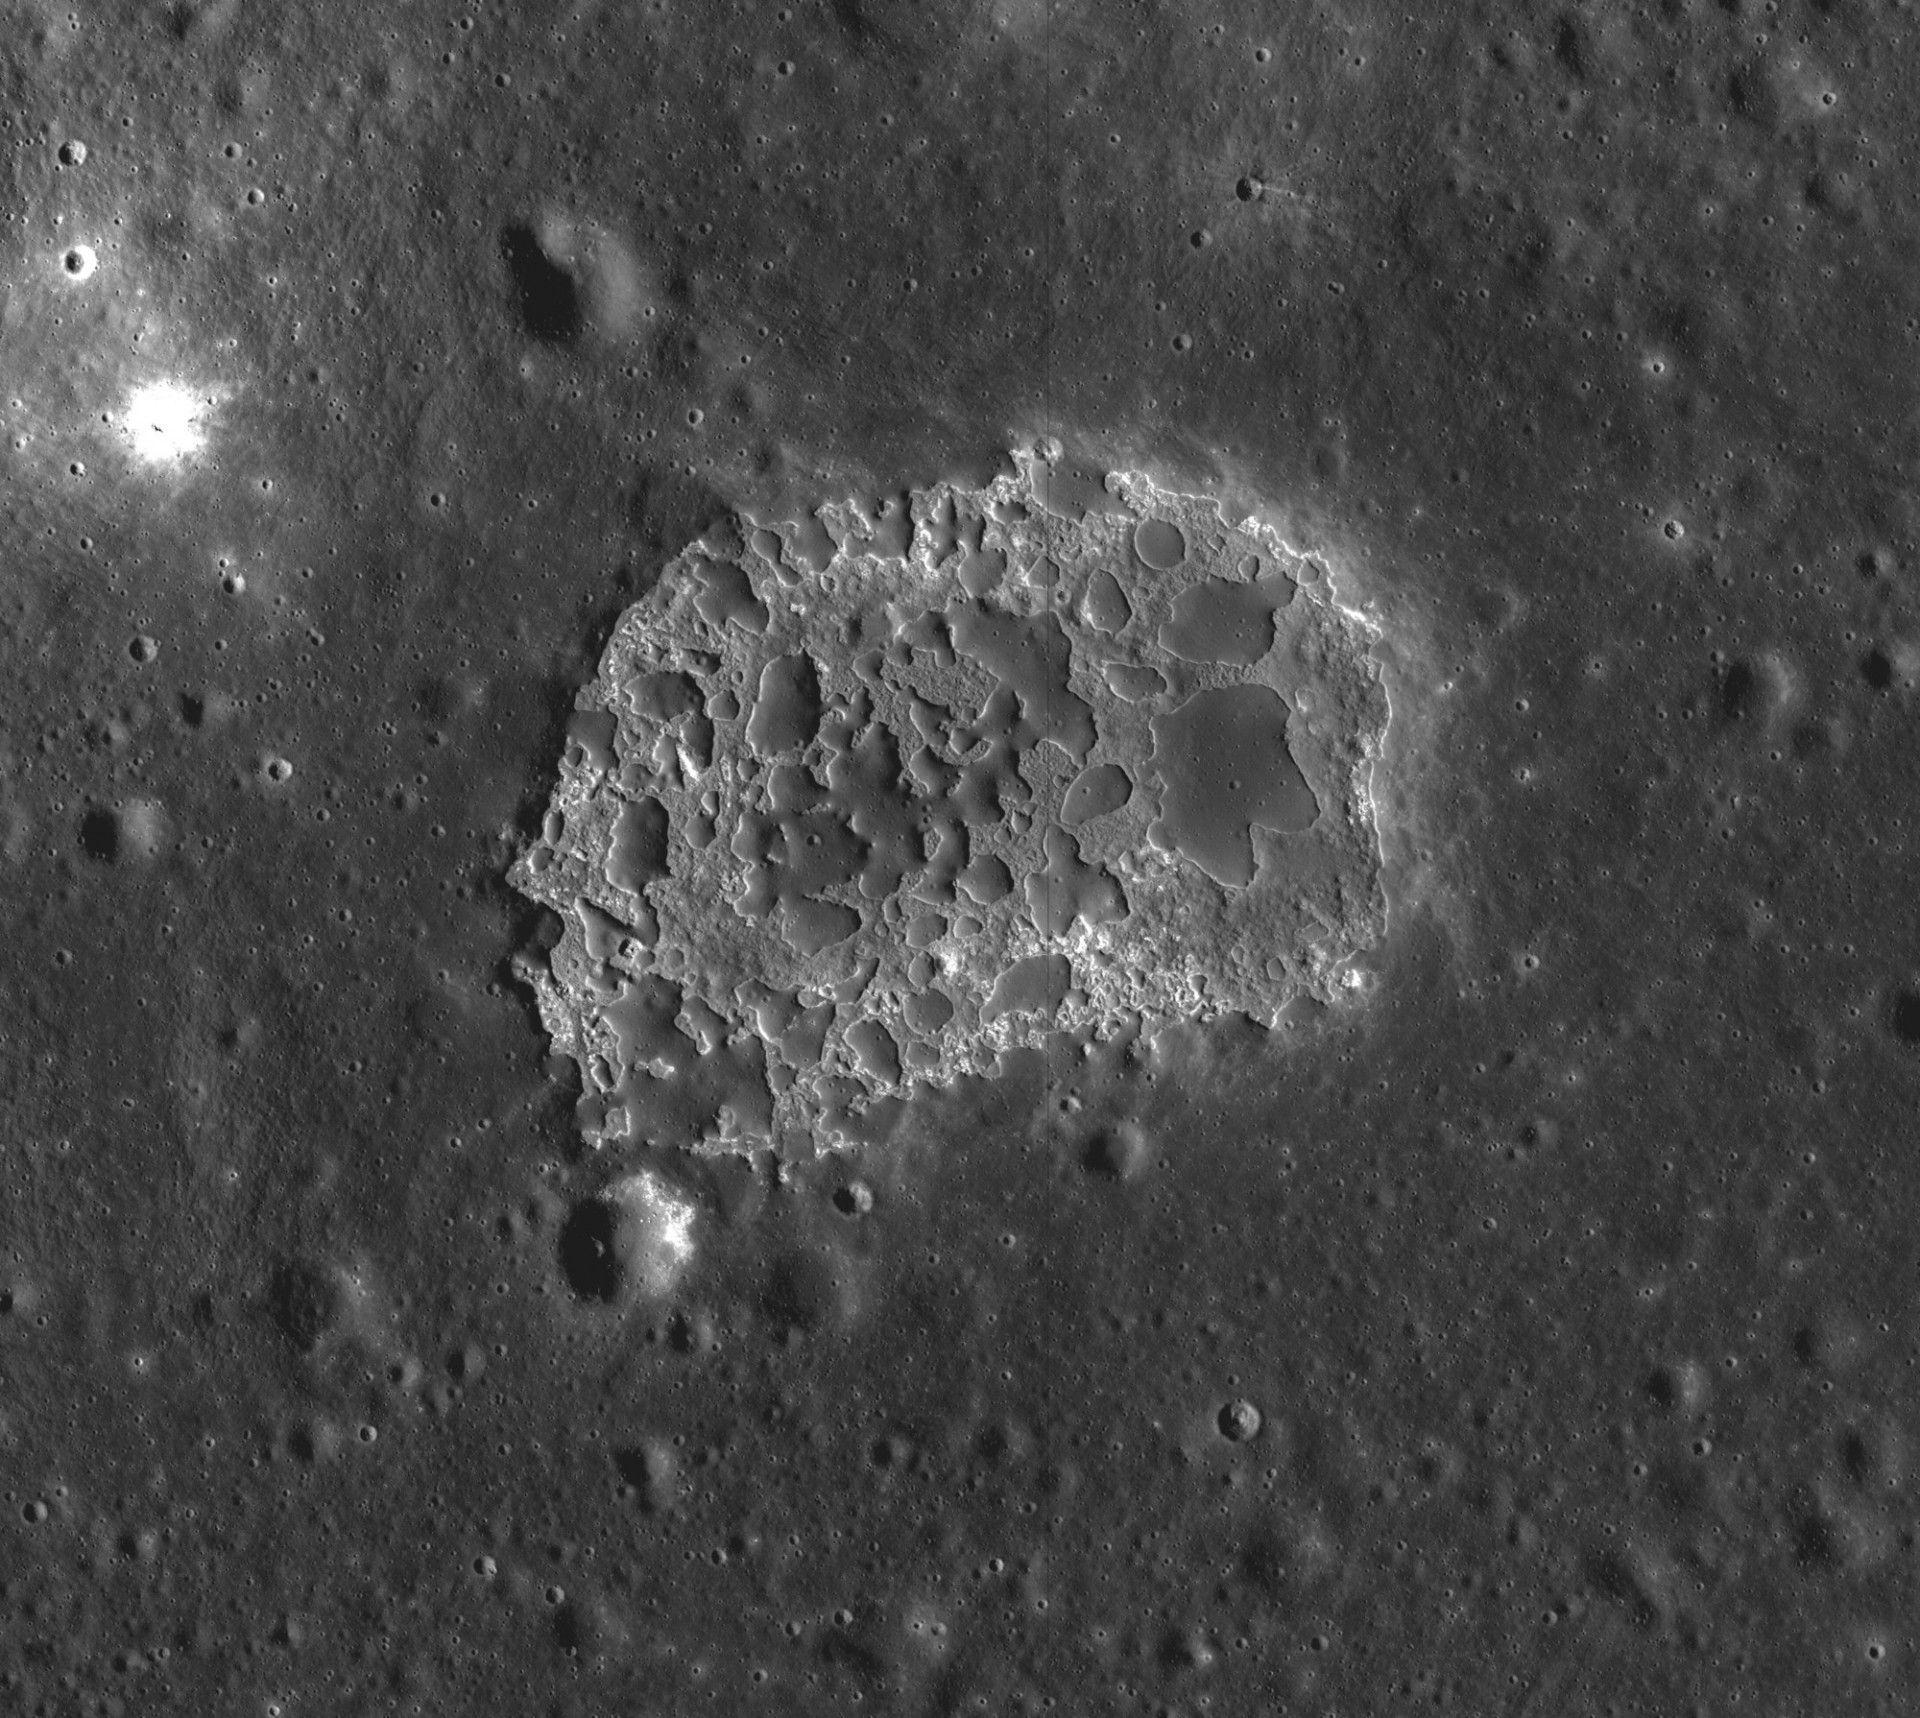 Struktura Ina na powierzchni Księżyca. Fot. NASA LRO